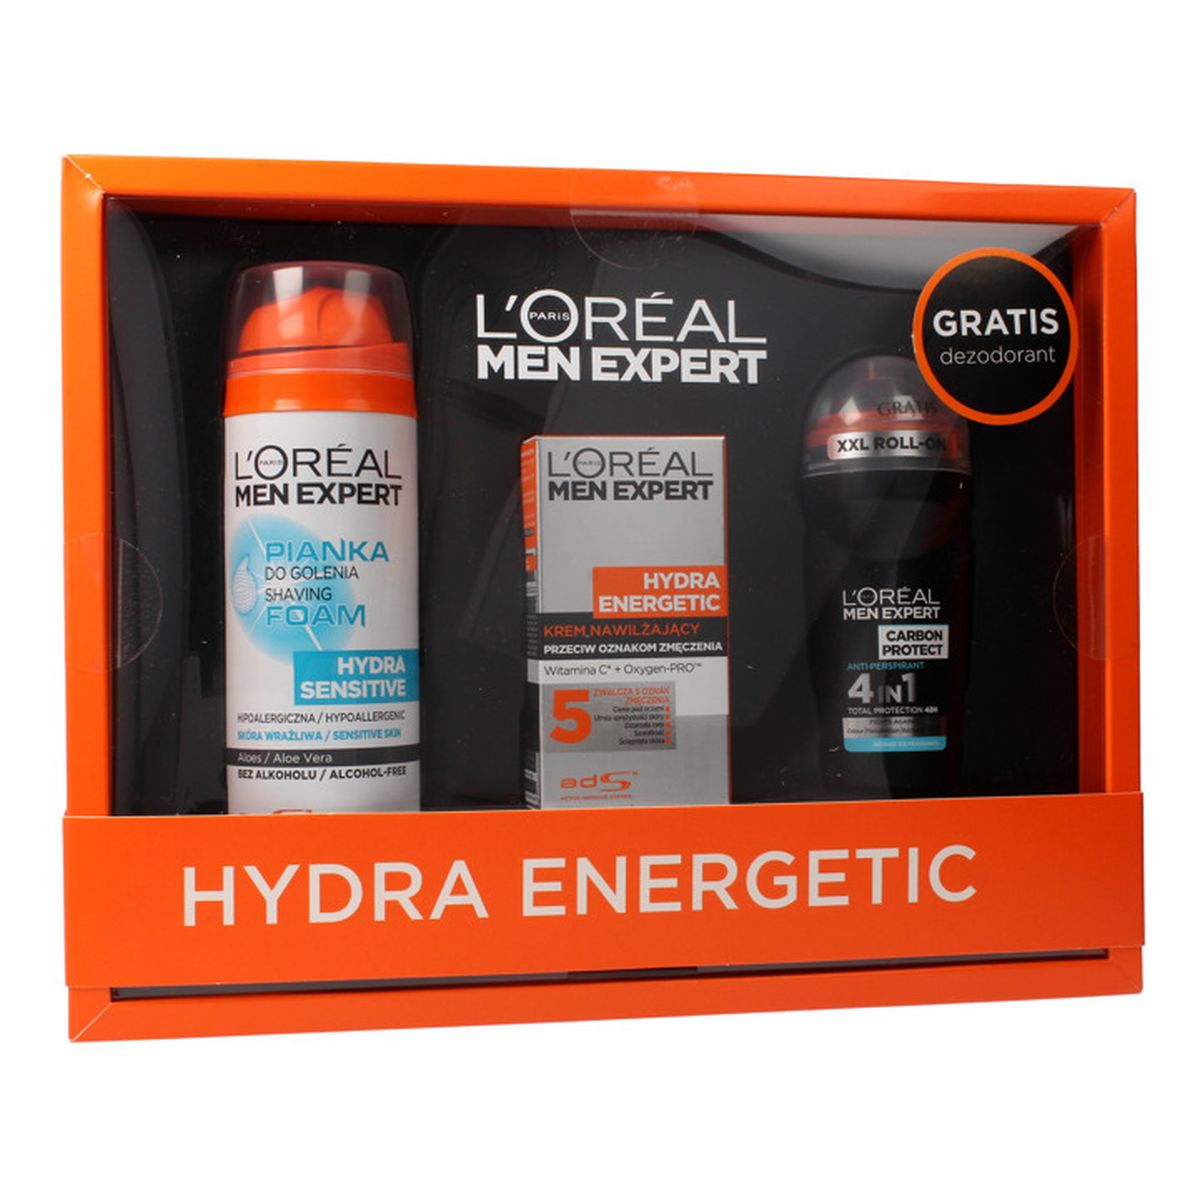 L'Oreal Paris Men Expert Hydra Energetic Zestaw prezentowy pianka do golenia + krem nawilżający + deo roll-on